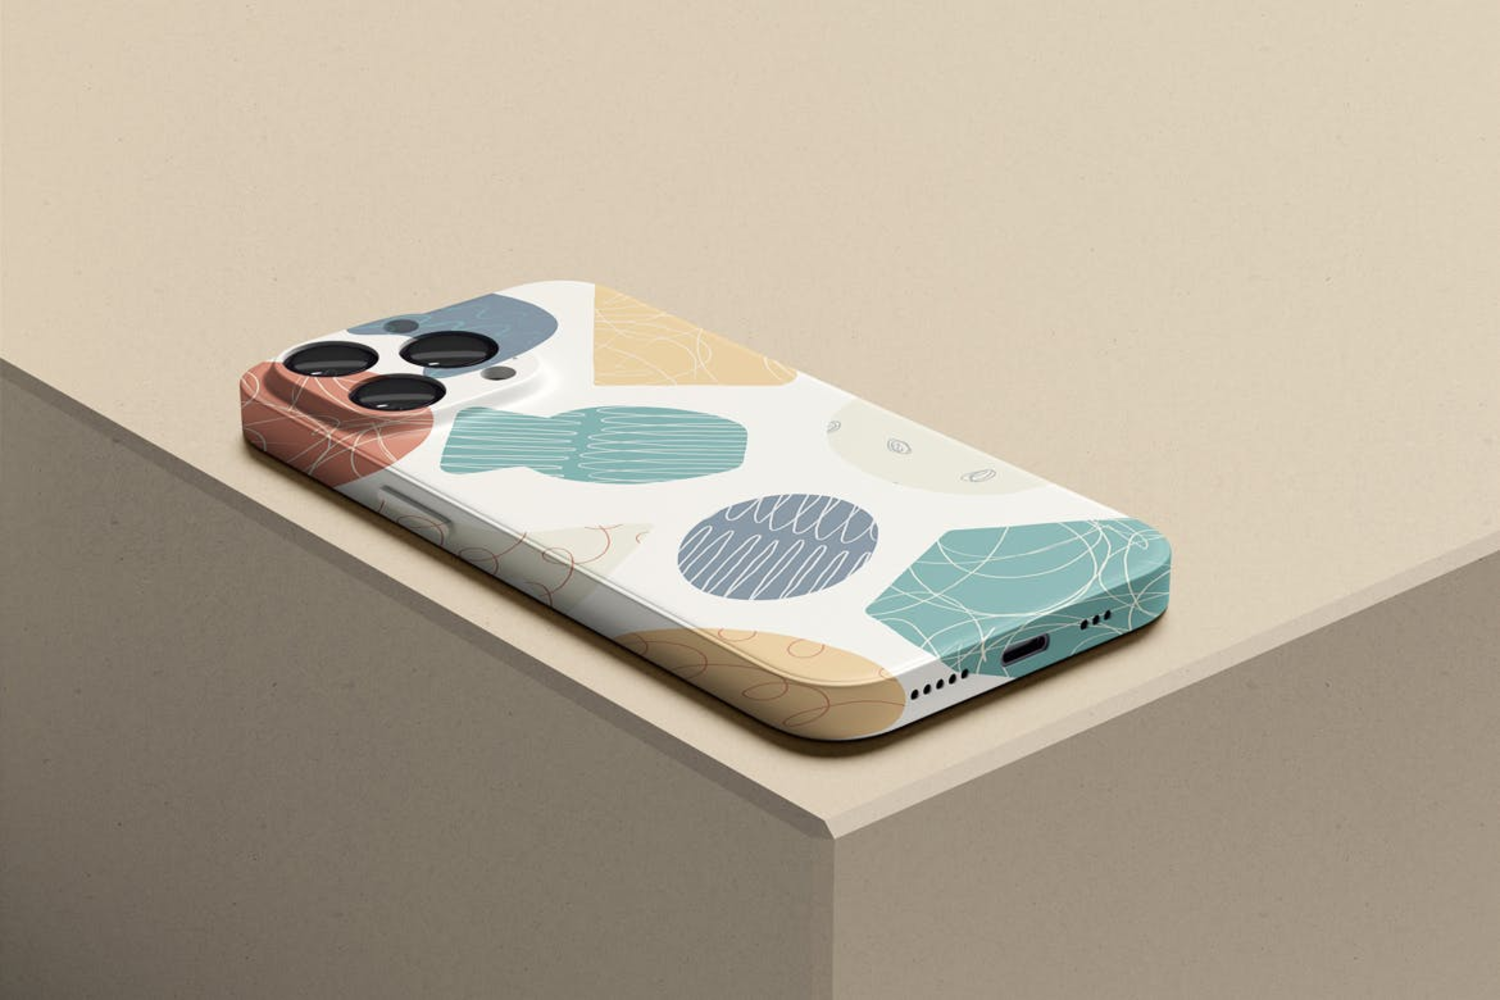 3915 苹果14塑料手机壳展示设计贴图ps包装样机素材mockup模板 Phone Case Mockup@GOOODME.COM